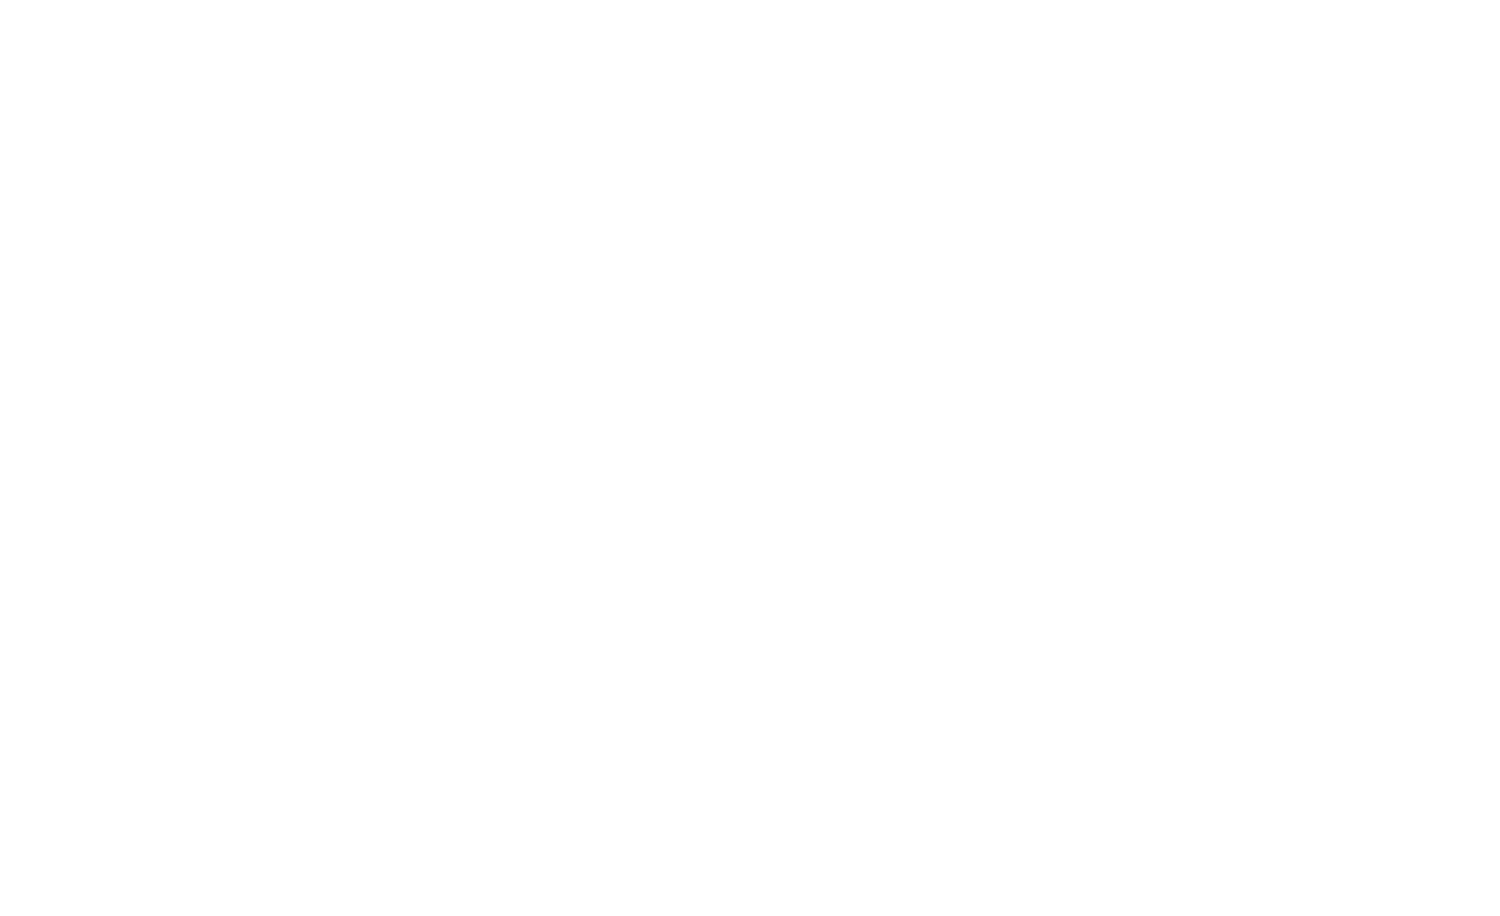 Charity Bomb